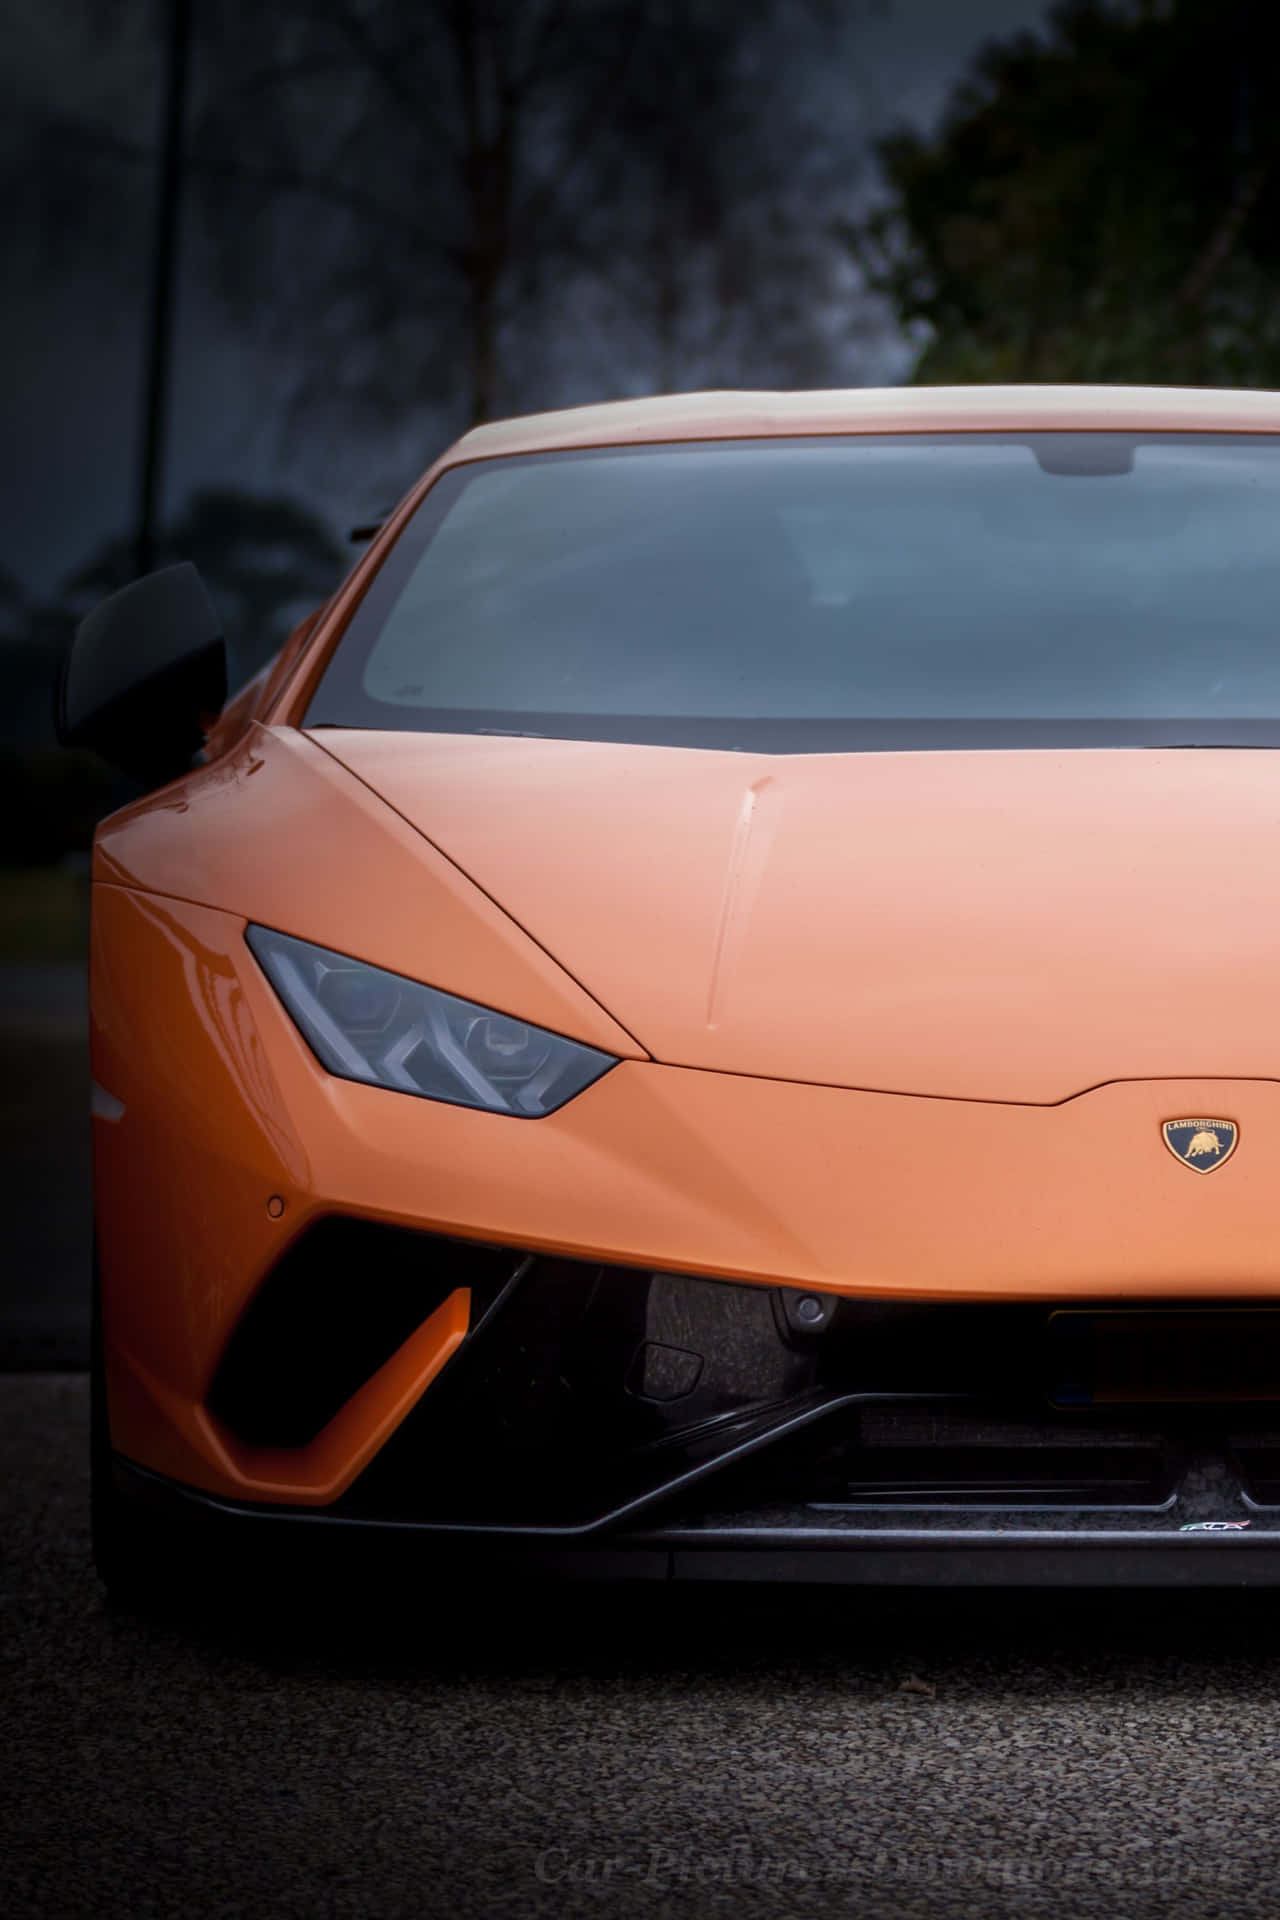 Lamborghinibringt Das Neueste Luxus-telefon In Seiner Technologie-reihe Auf Den Markt. Wallpaper